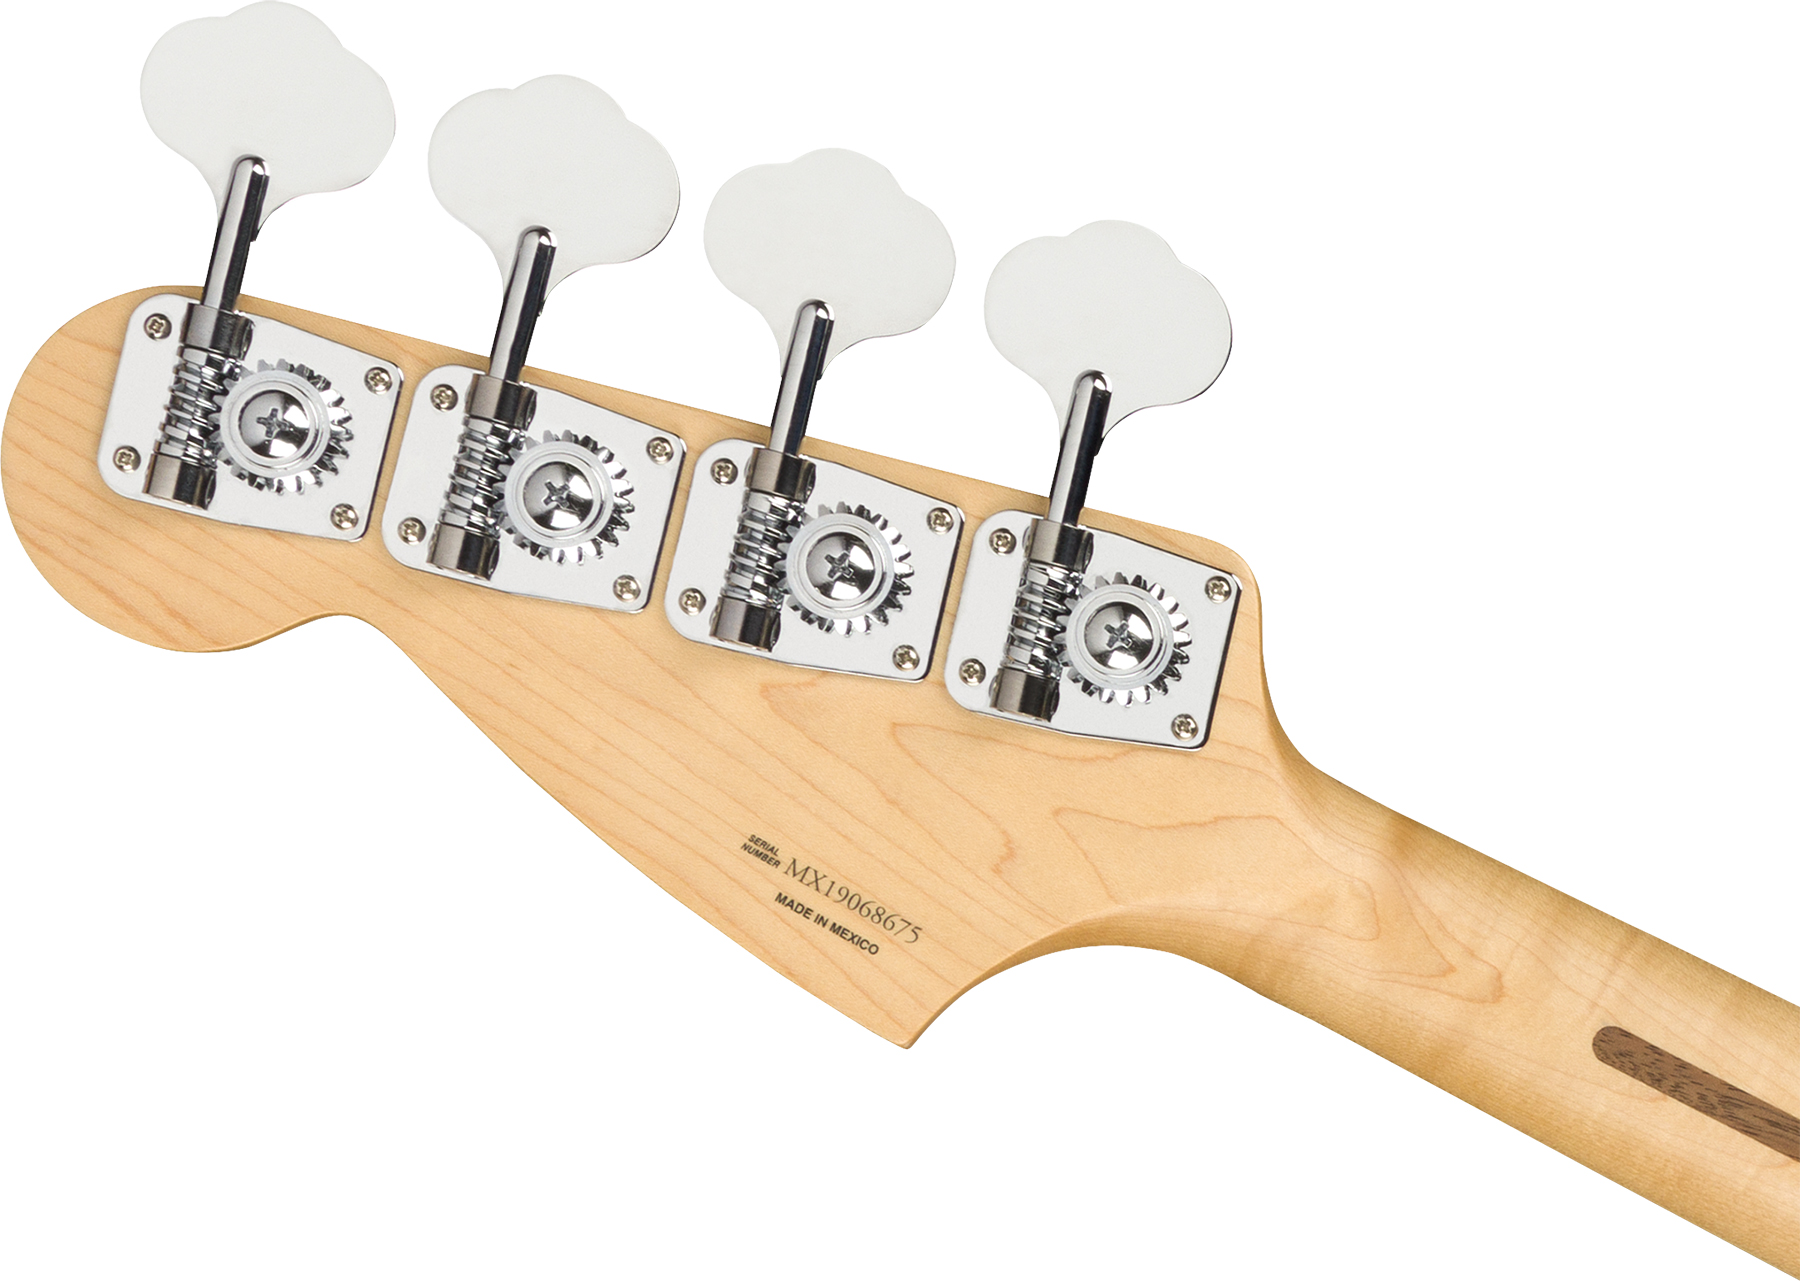 Fender Player Mustang Bass Mex Pj Mn - Sienna Sunburst - Short scale elektrische bas - Variation 3